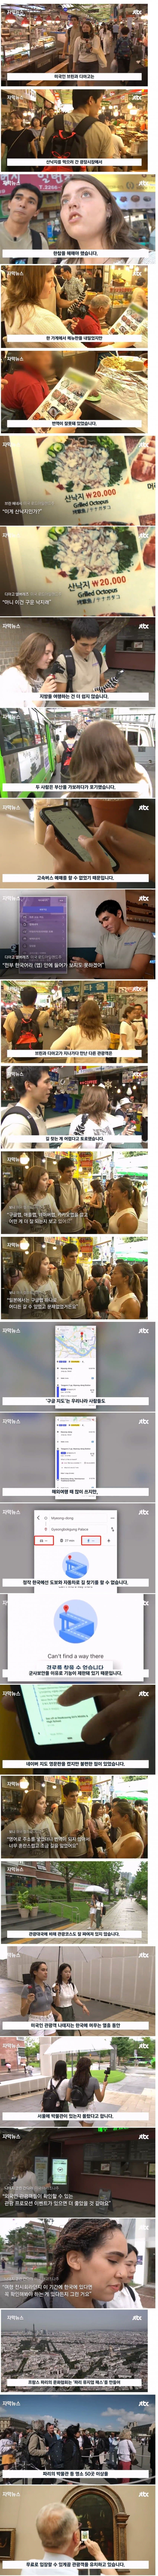 한국 여행이 힘들다는 외국인들